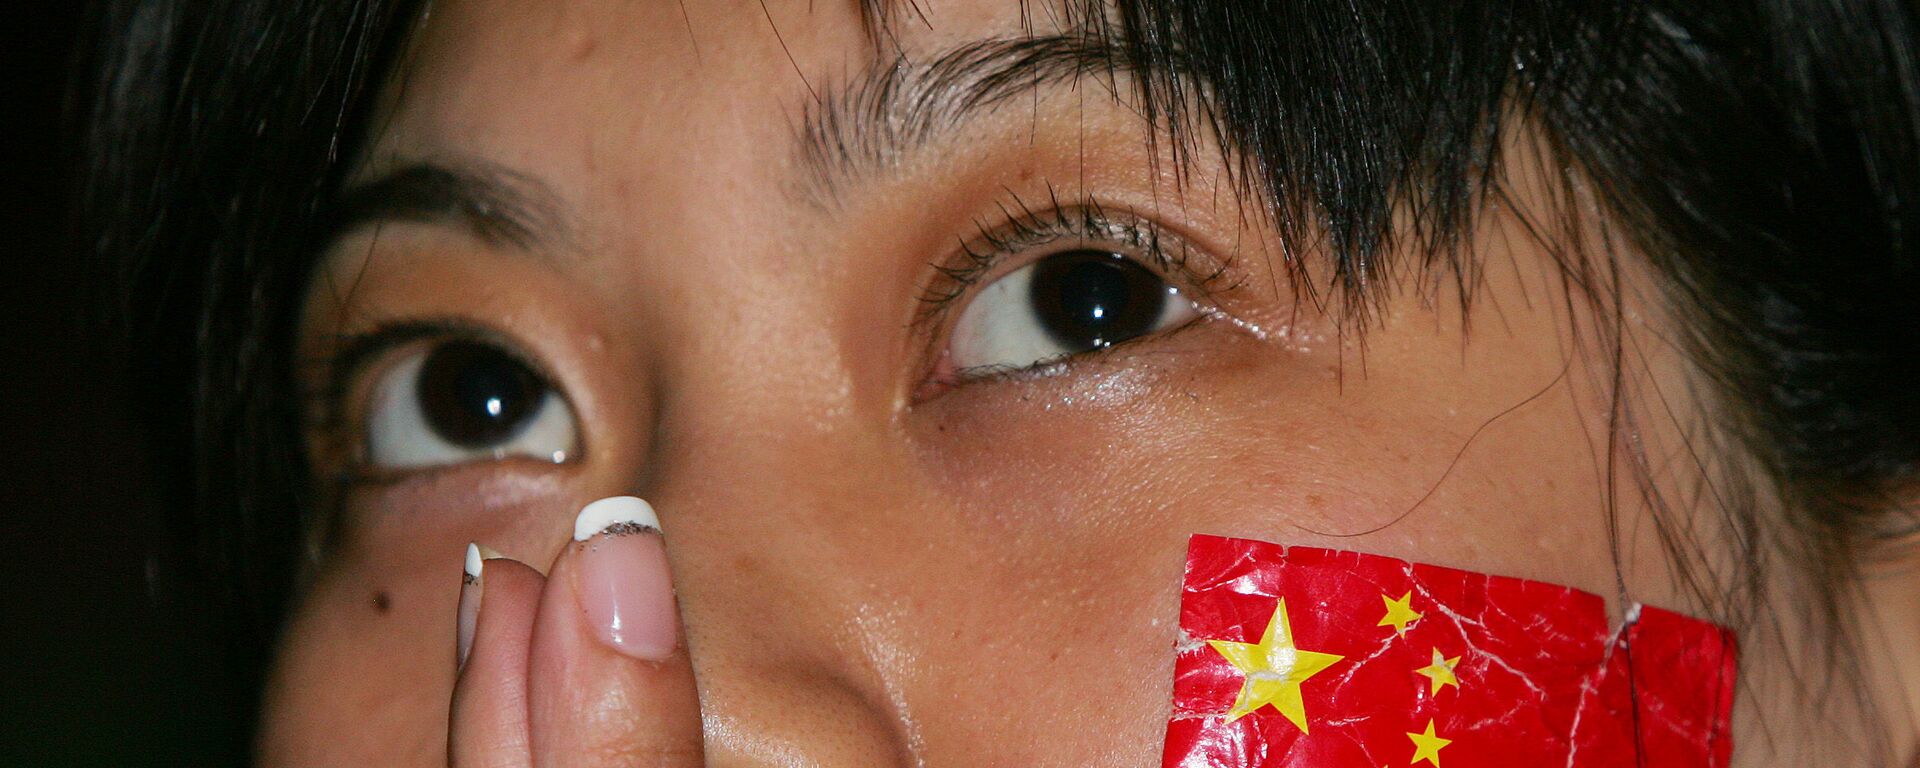 Cô gái với lá cờ Trung Quốc trên má. - Sputnik Việt Nam, 1920, 29.06.2020